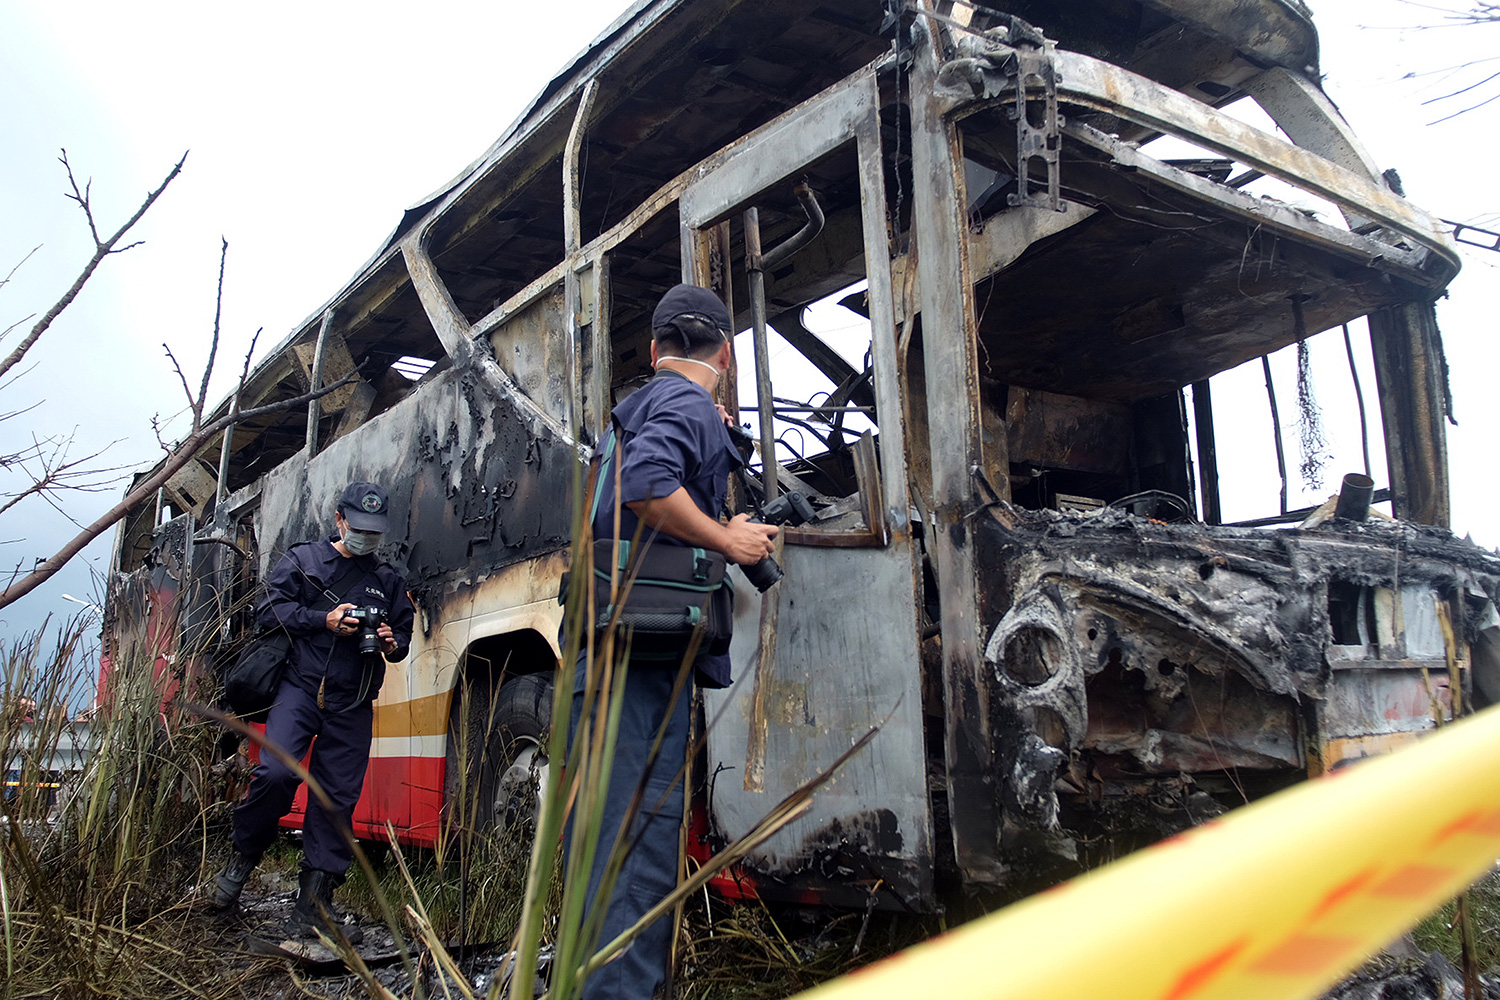 26 personas mueren calcinadas cuando un autobús turístico estalla en llamas